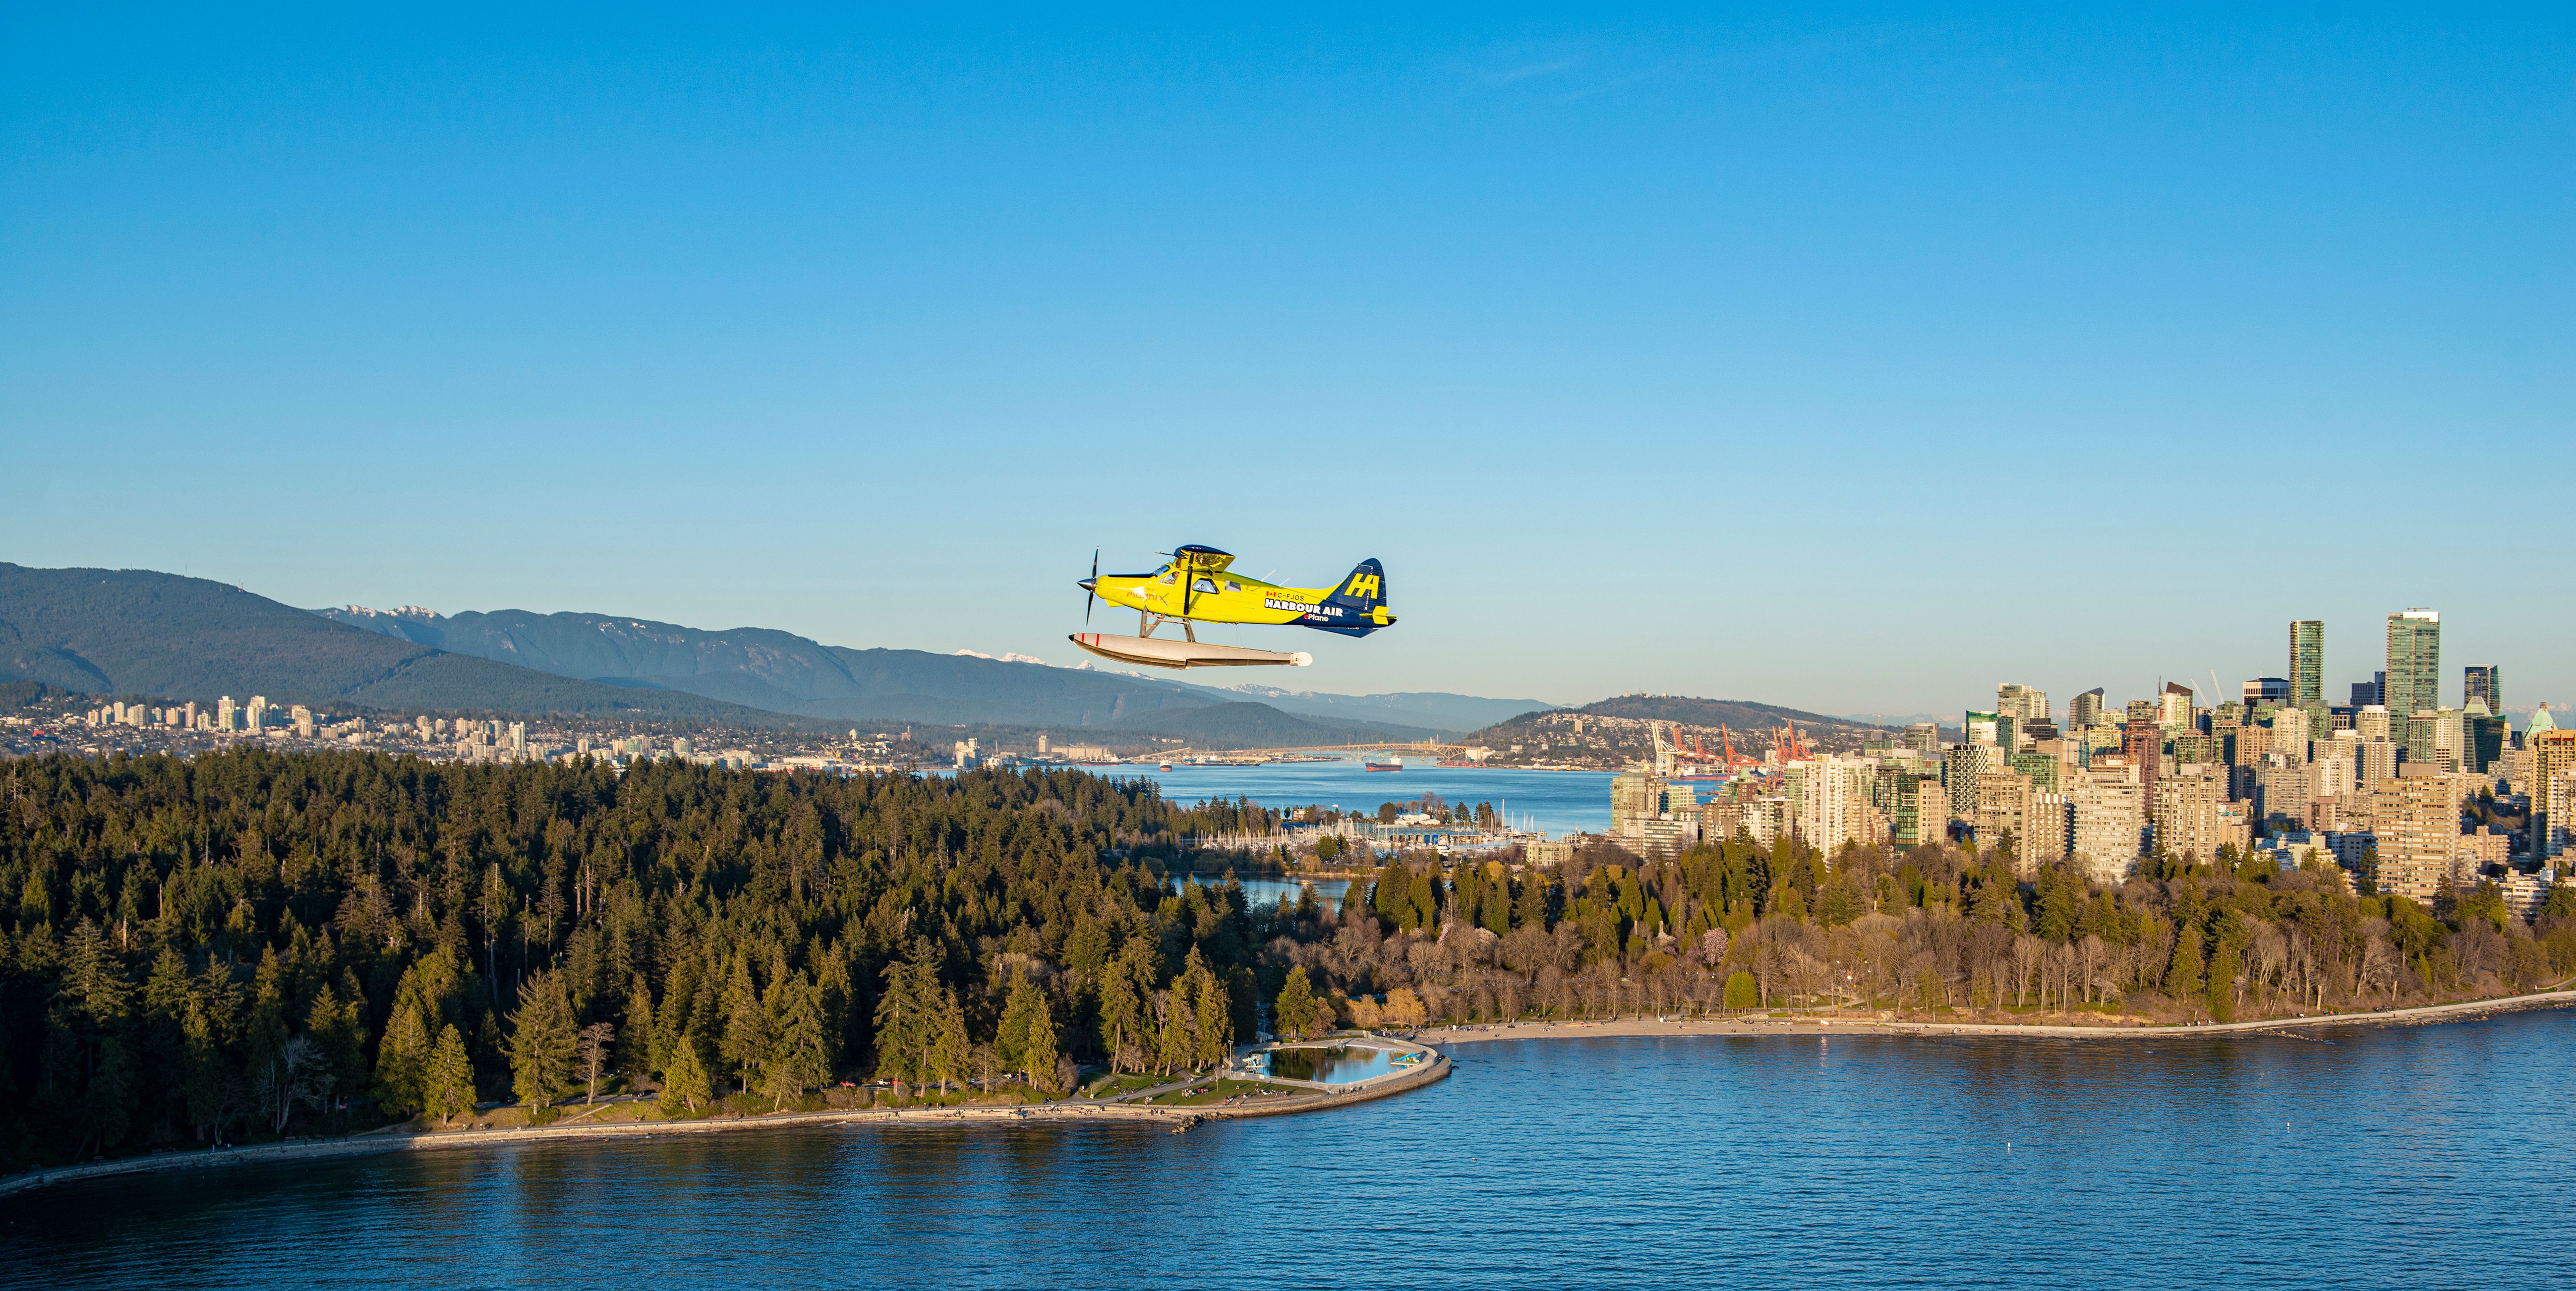 Harbour_Air_ePlane_2021Apr_5291 - L'ePlane de Harbour Air survolant Vancouver, Colombie-Britannique, Canada